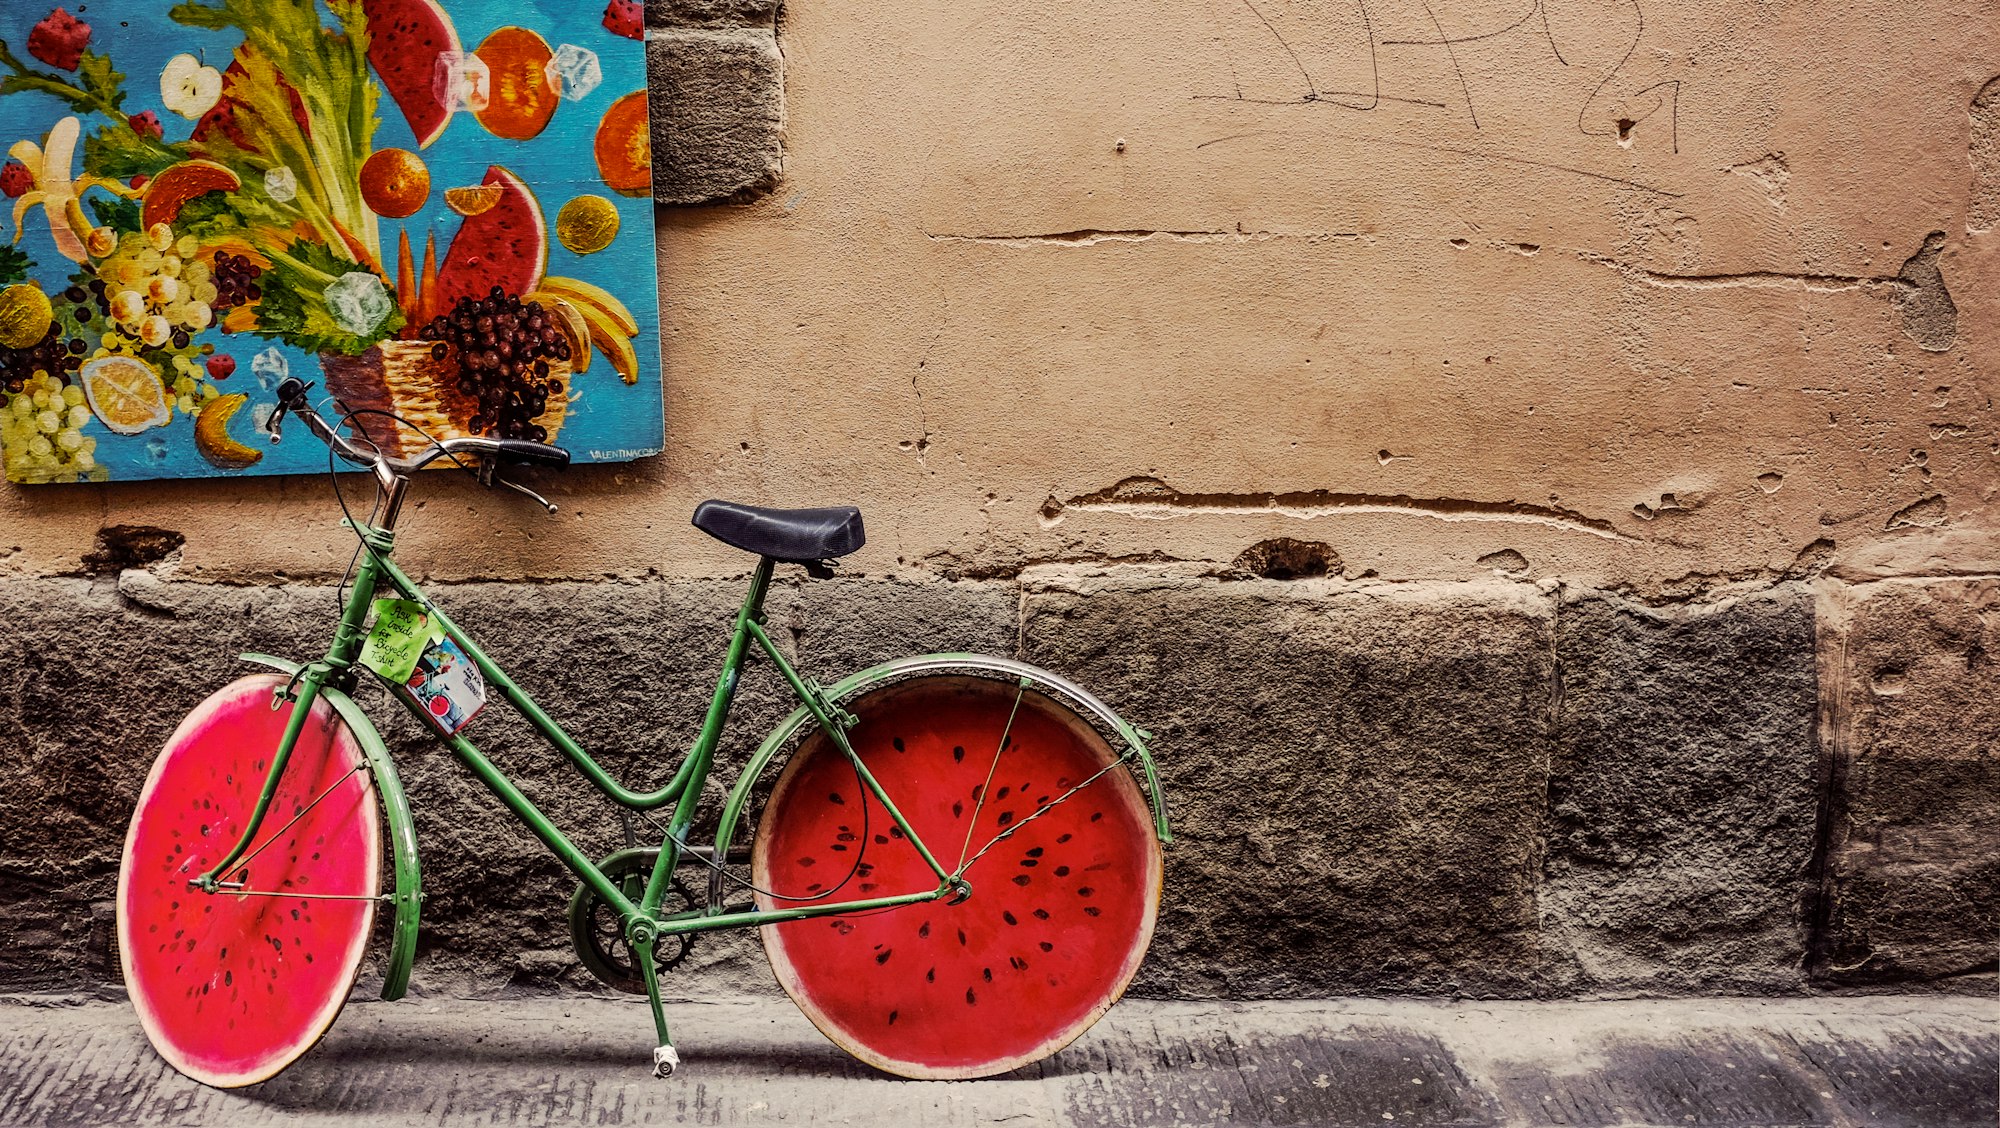 Unique watermelon bicycle